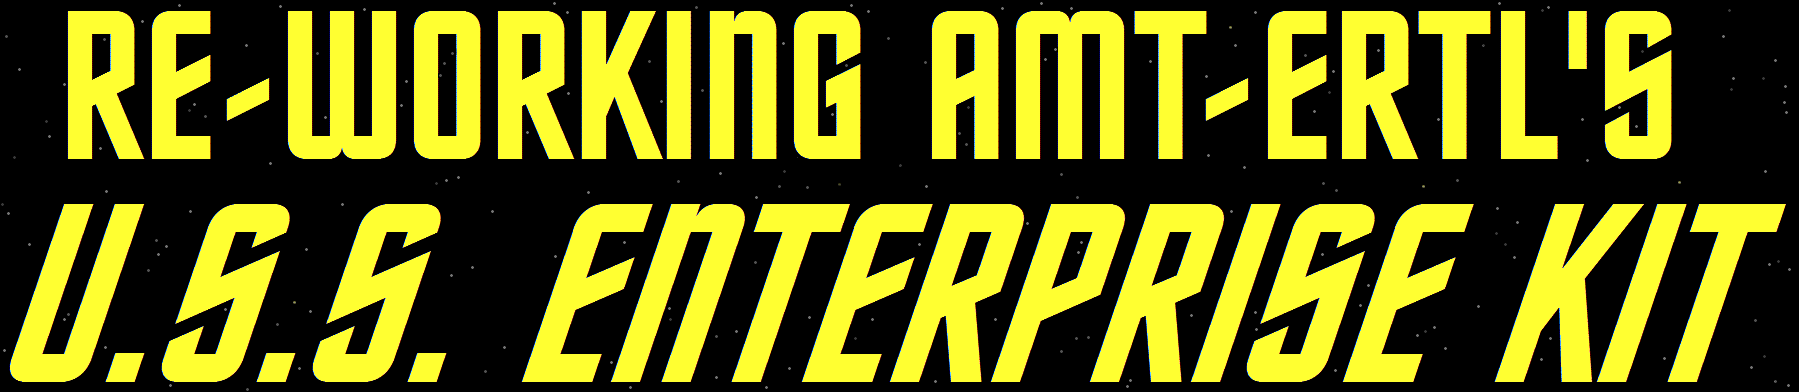 Restoring AMT-Ertl's U.S.S. Enterprise Kit